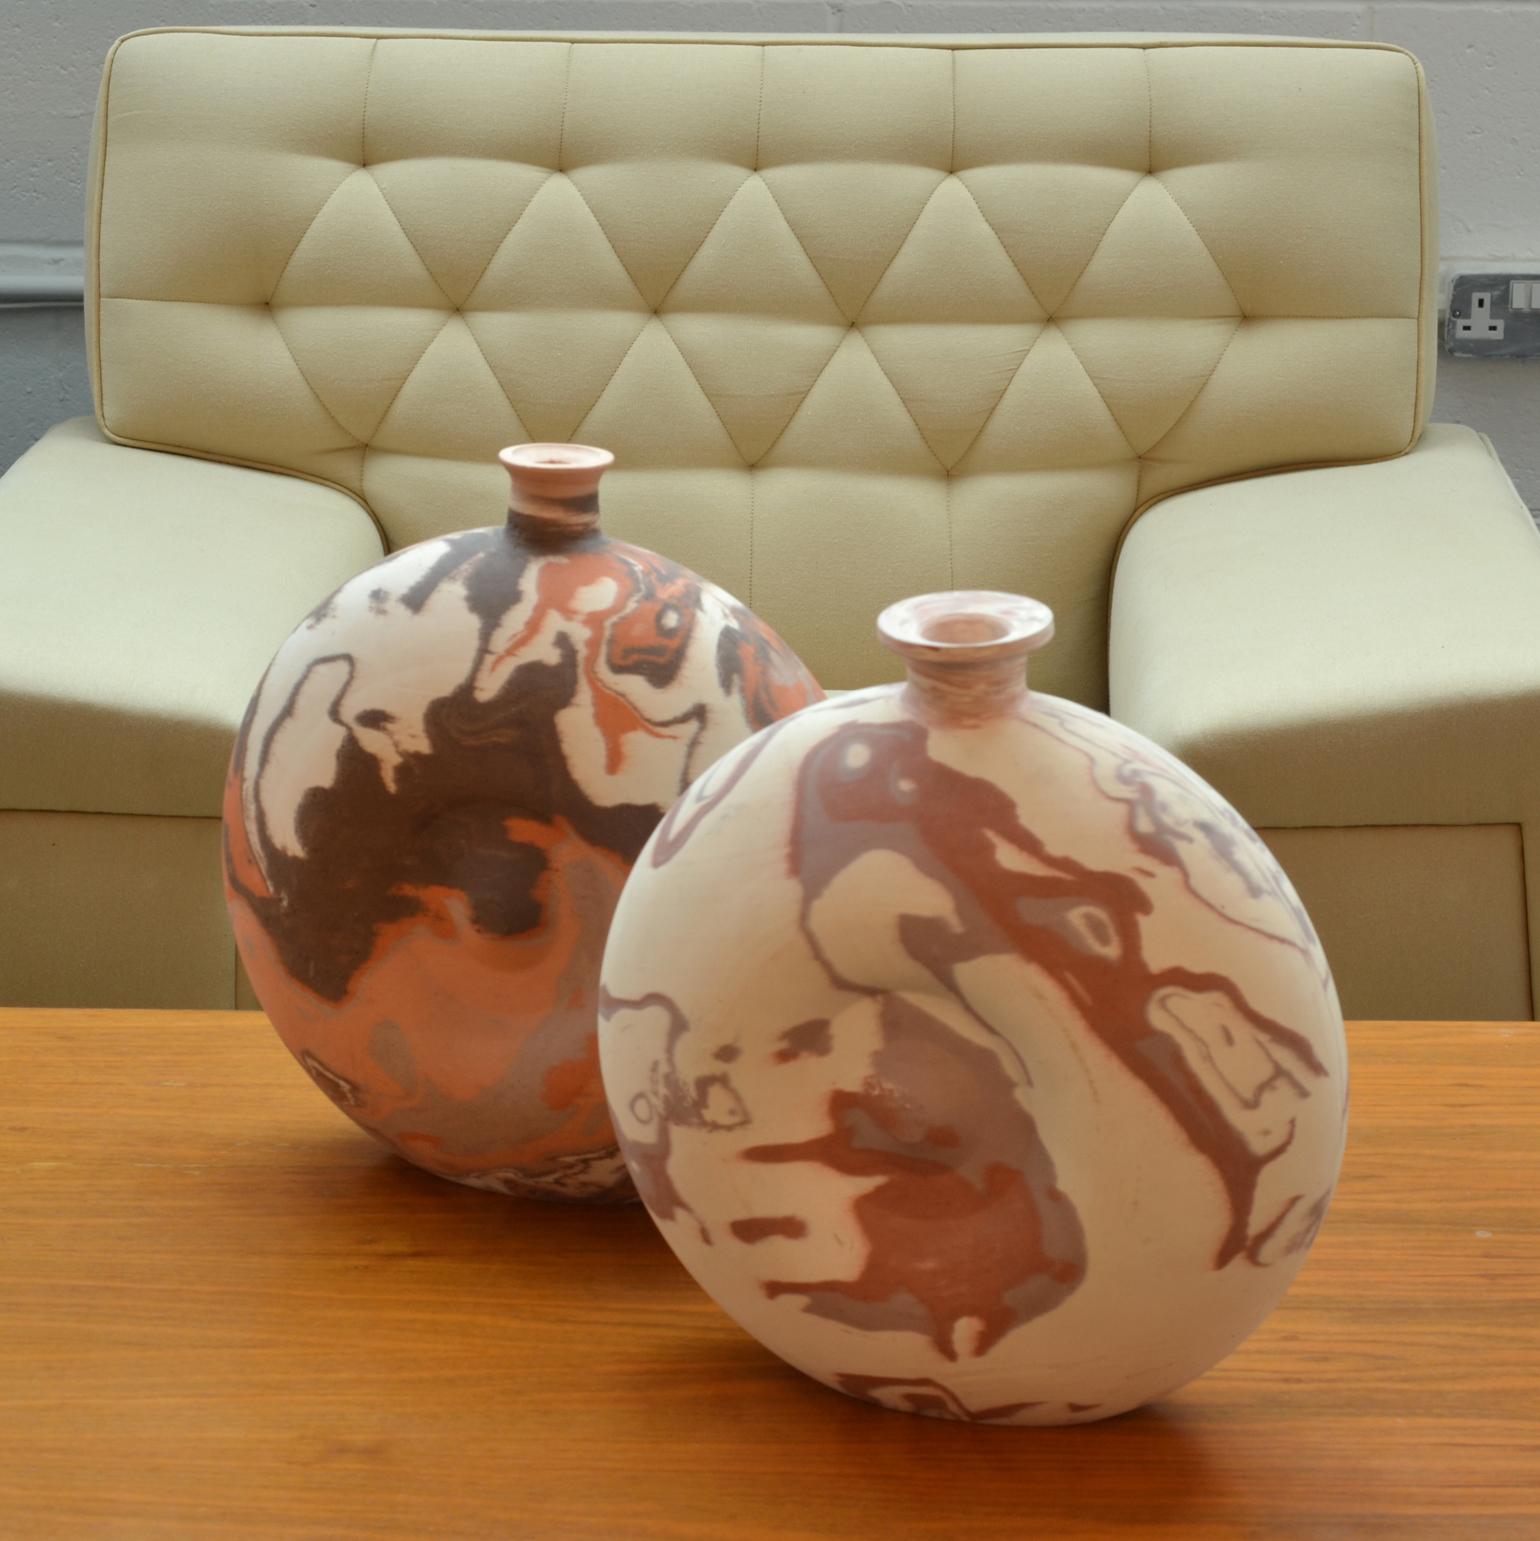 Paar zeitgenössische holländische Studio-Keramikvasen mit marmoriertem Dekor in originalen Tonfarben mit Erdtönen von Hans Naus, signiert H.N. '07 Nr. 8/15.
Die Vasen werden von Hand in die Form gepresst, wobei drei verschiedene Tonfarben gemischt